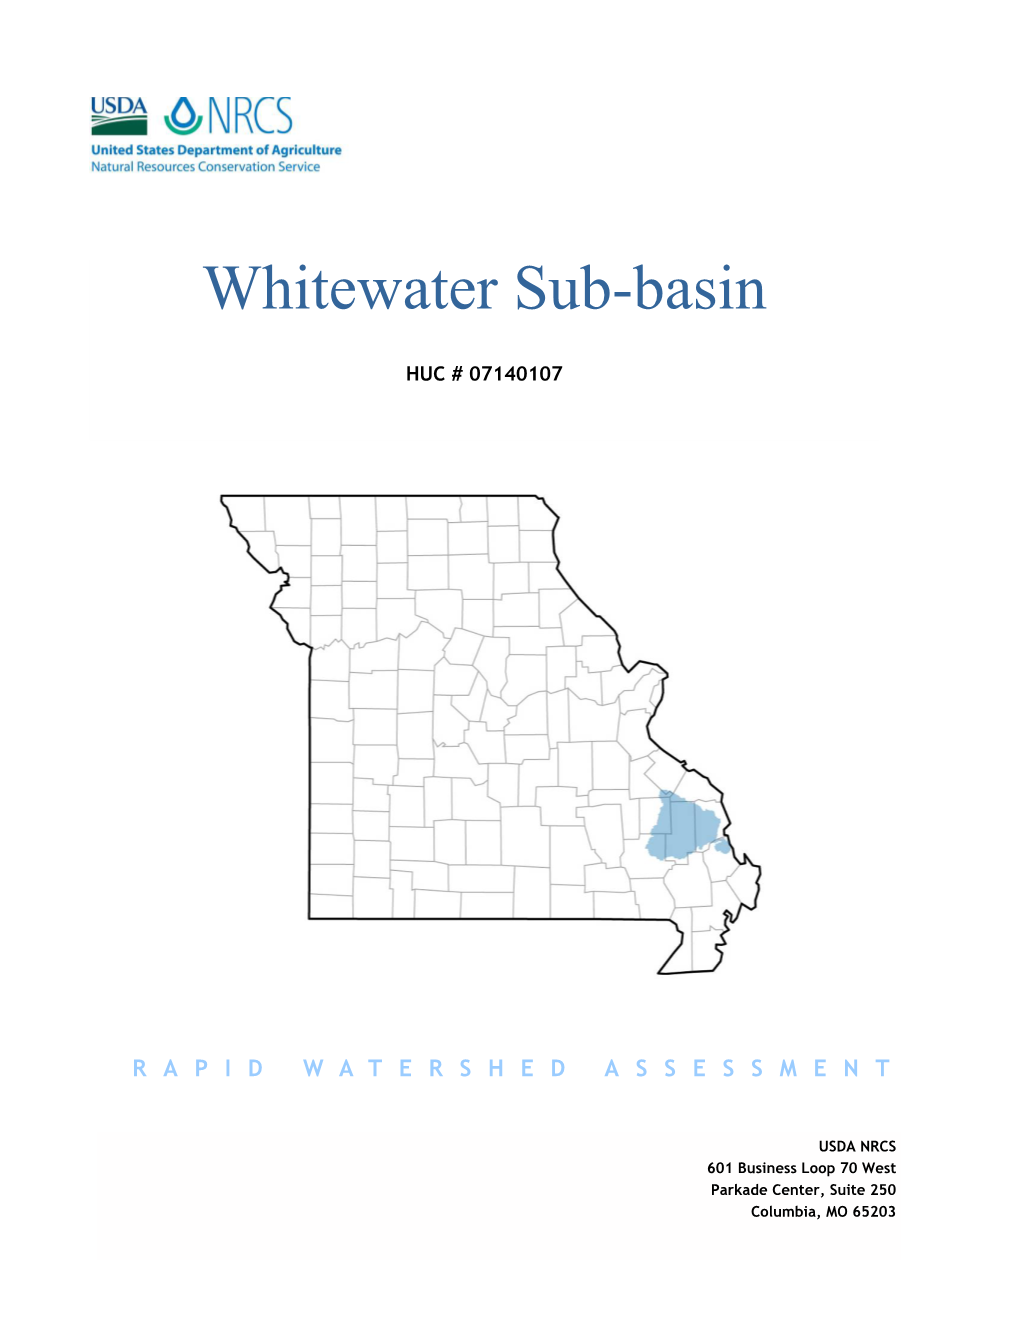 Whitewater Sub-Basin